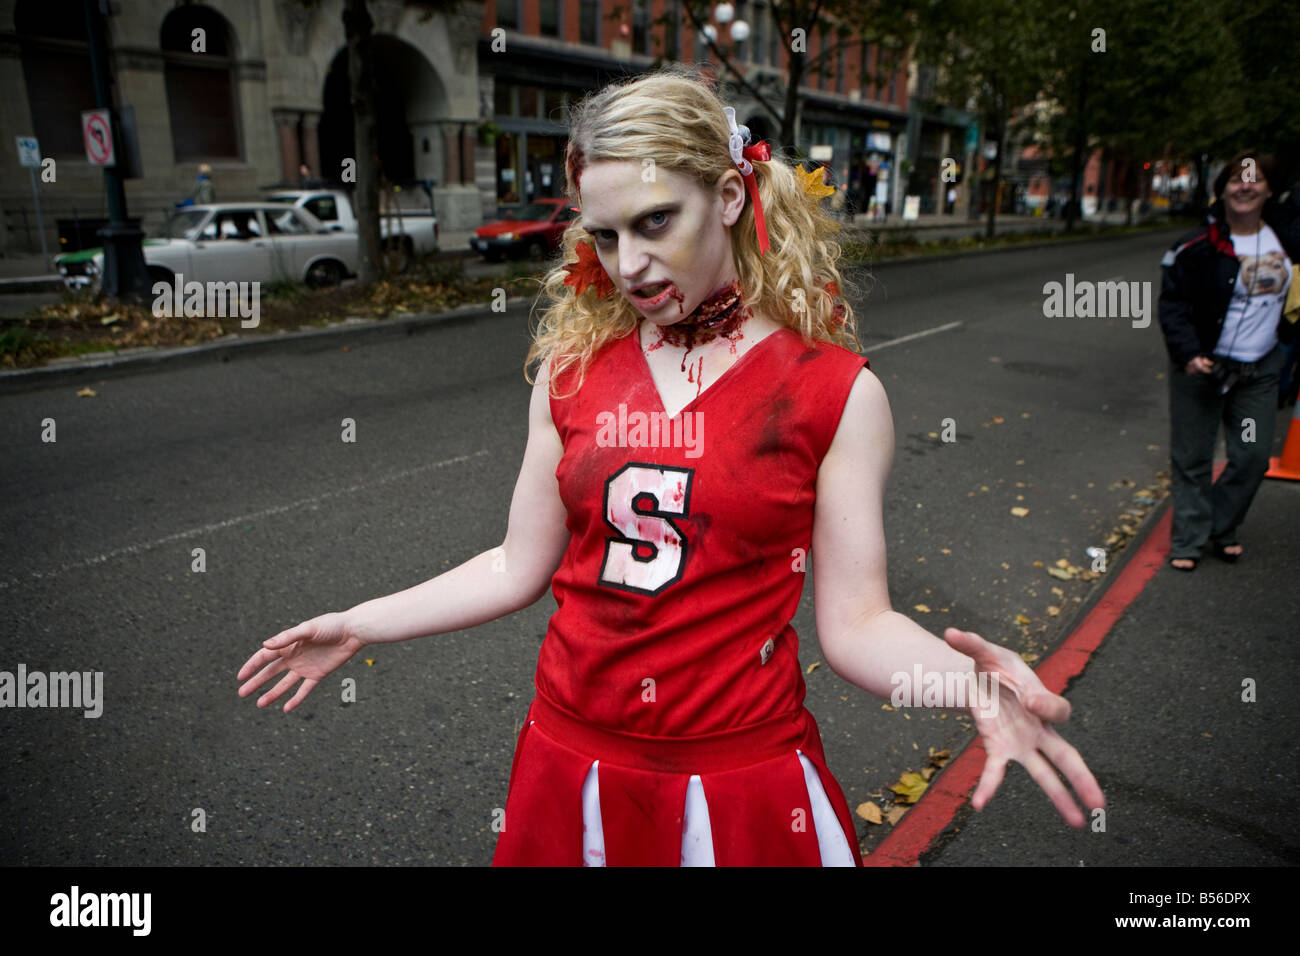 Le 25e anniversaire de Thriller de Jackson, Seattle vidéo Zombies se rassemblent dans le parc occidental d'accueillir un événement de danse Thriller. Banque D'Images